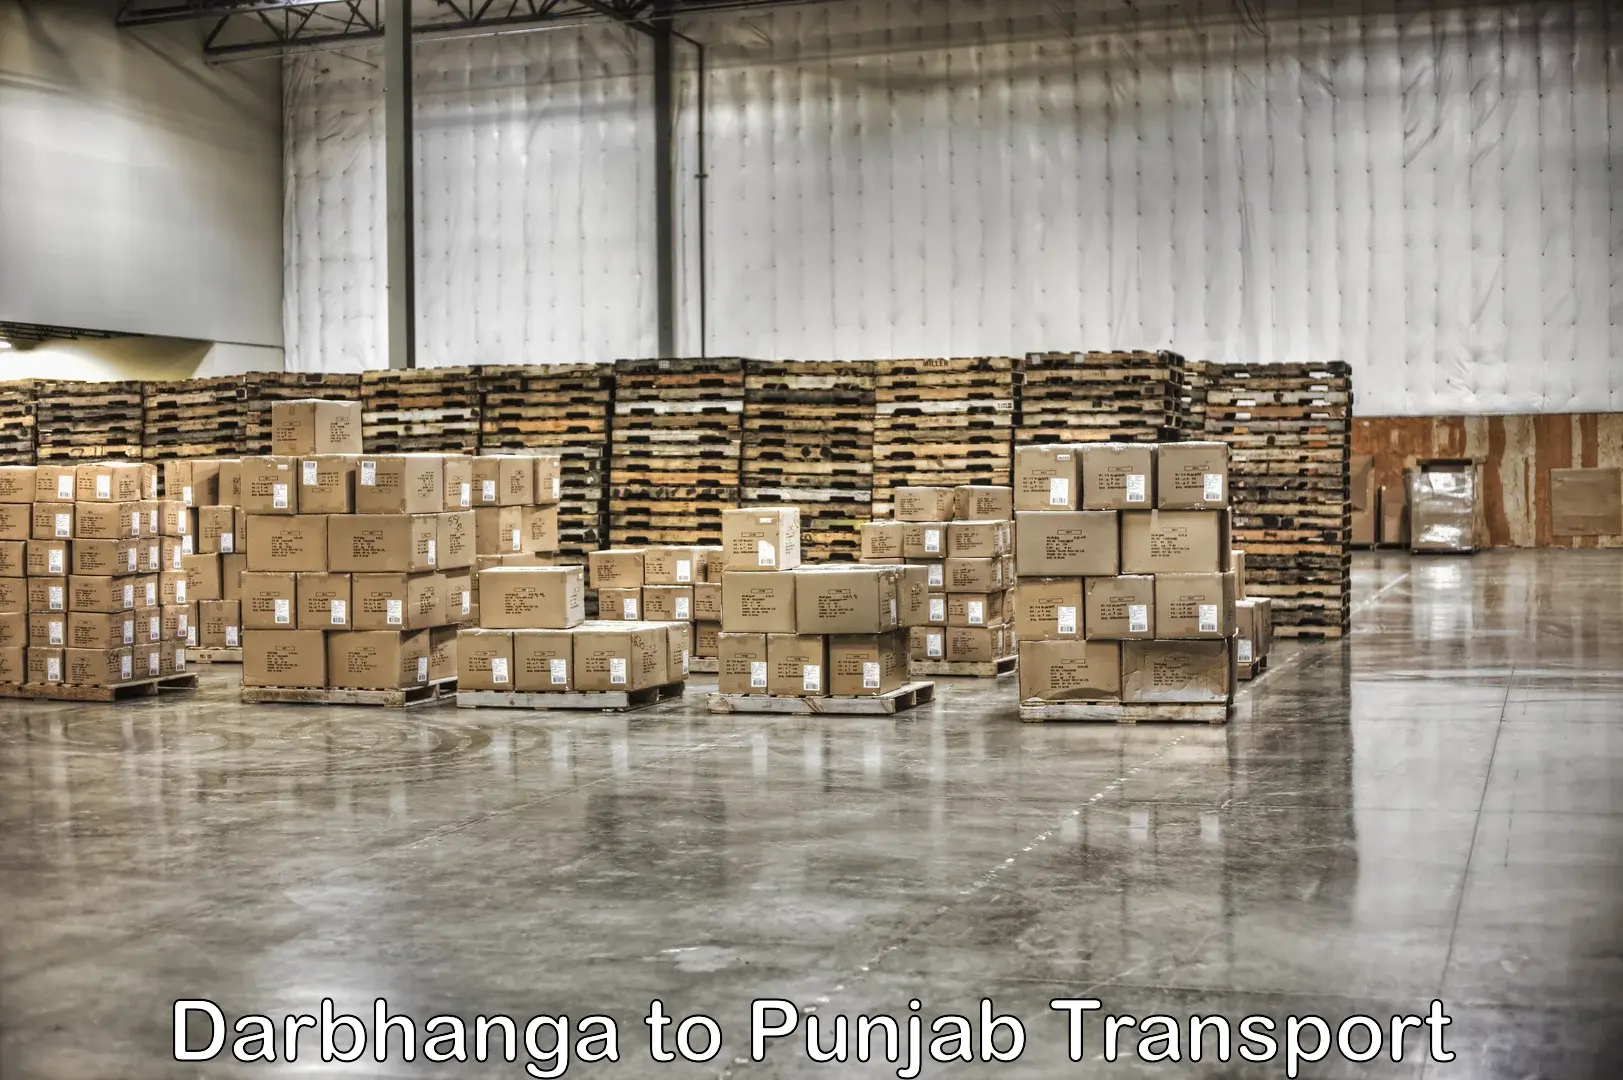 Transport in sharing Darbhanga to Barnala